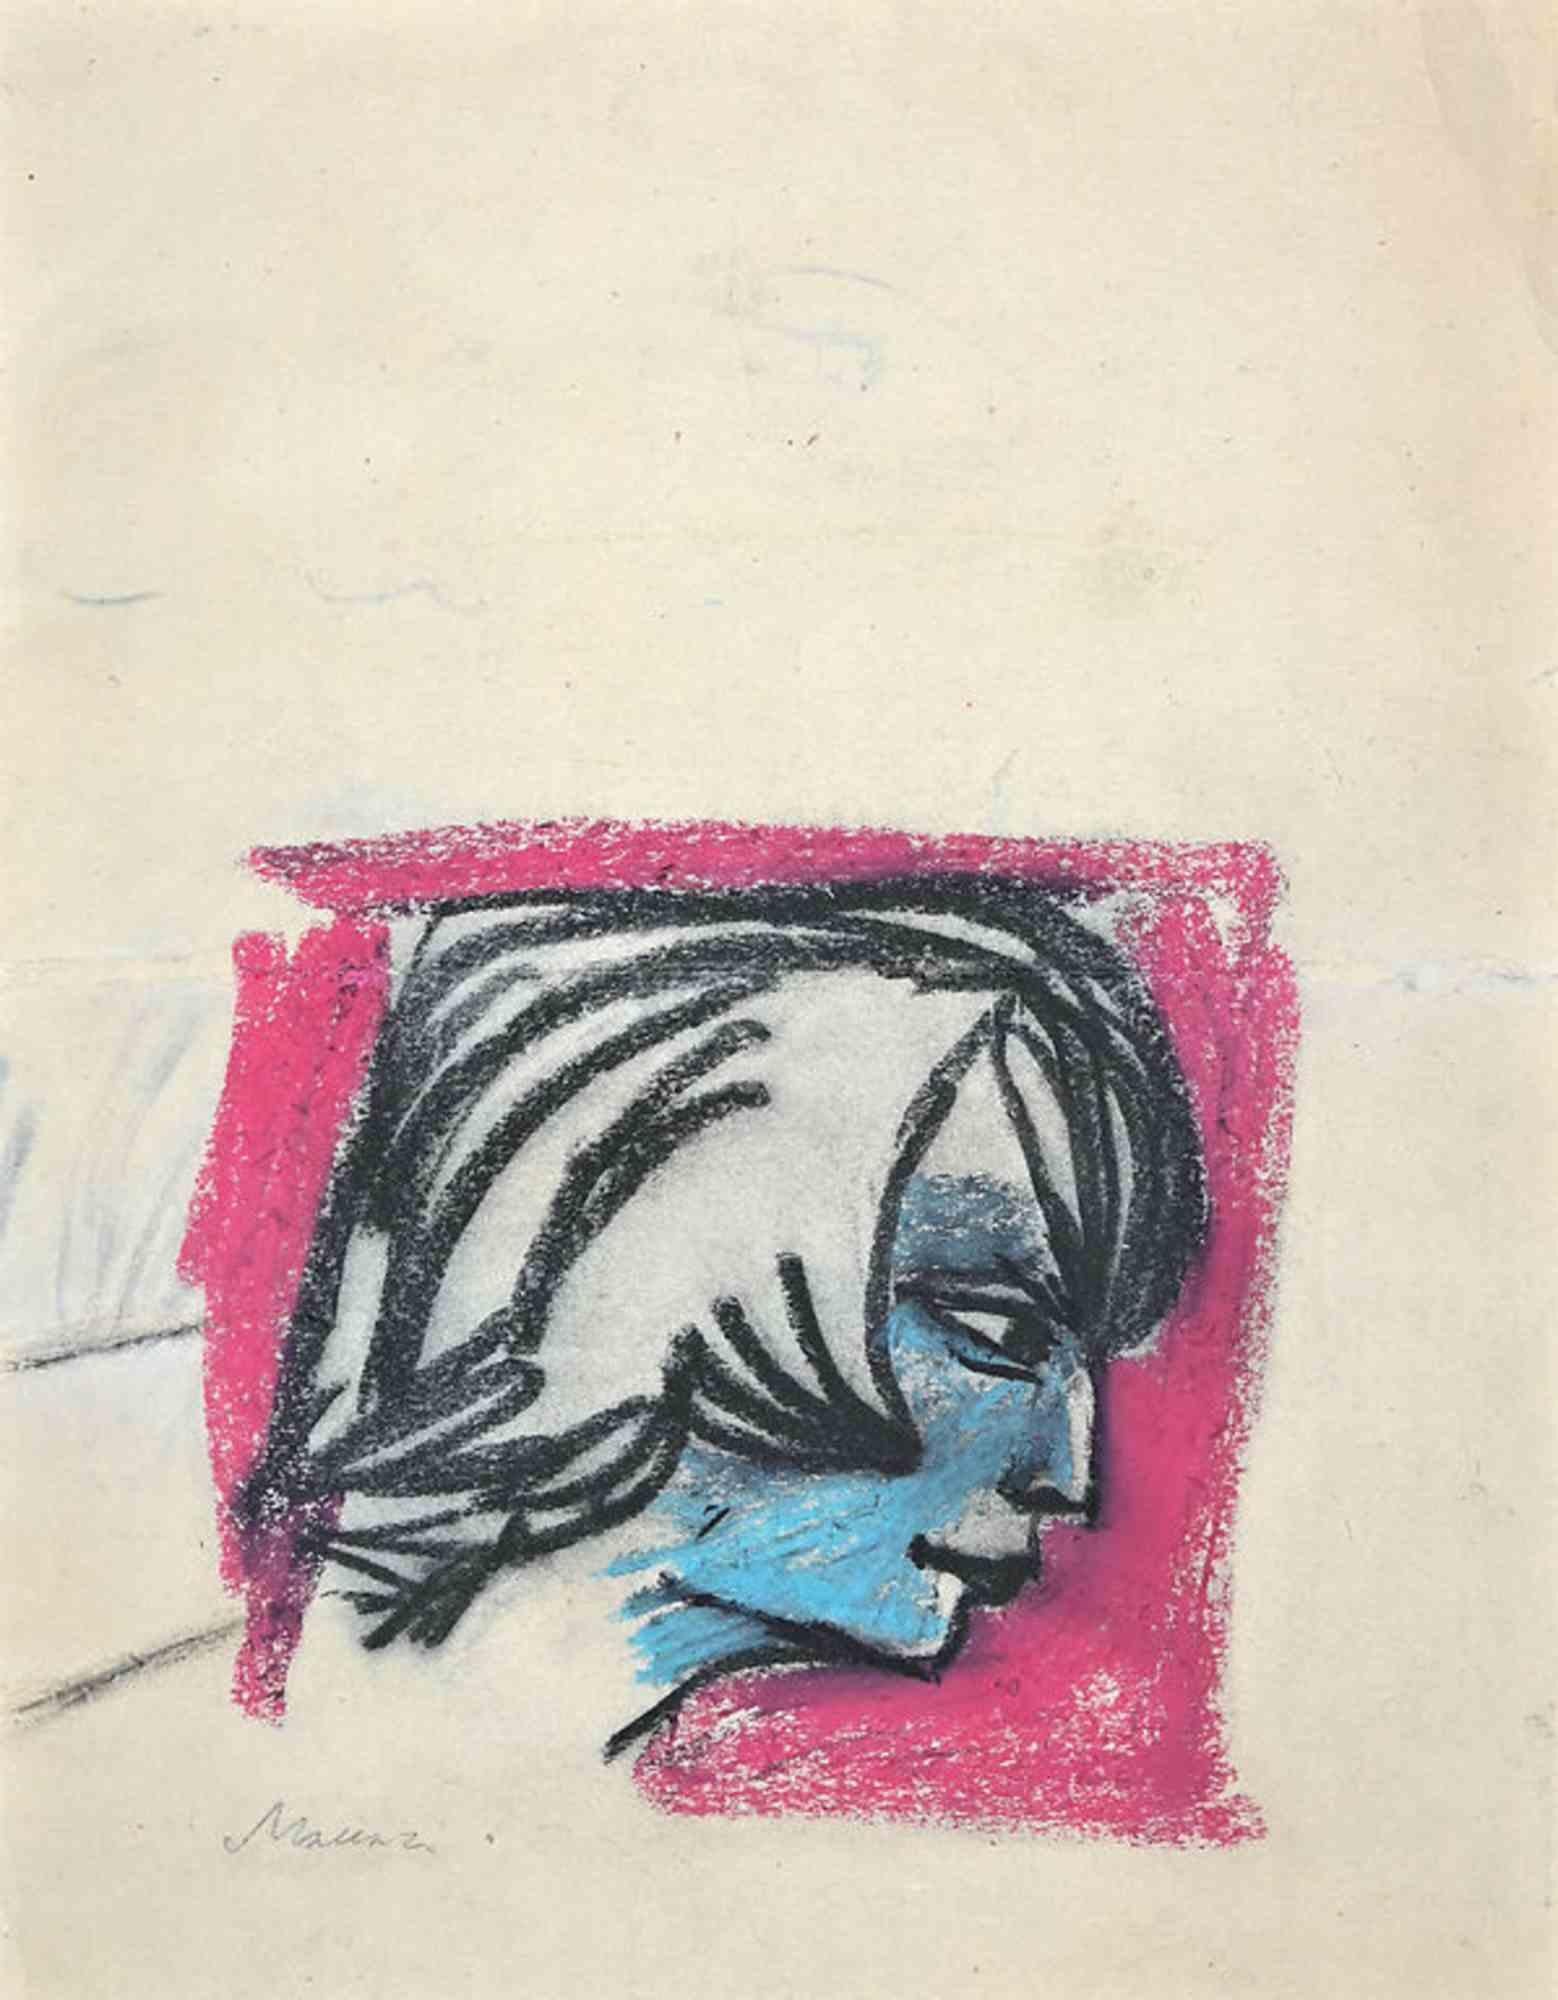 Porträts ist ein  Kunstwerk von Mino Maccari (1898-1989).

Farbiges Porträt auf der einen Seite, Figur einer Frau und zwei Köpfe in Schwarz auf der anderen Seite.

Pastell und Holzkohle auf Papier. 

42x32 cm nicht gerahmt.

handsigniert am linken